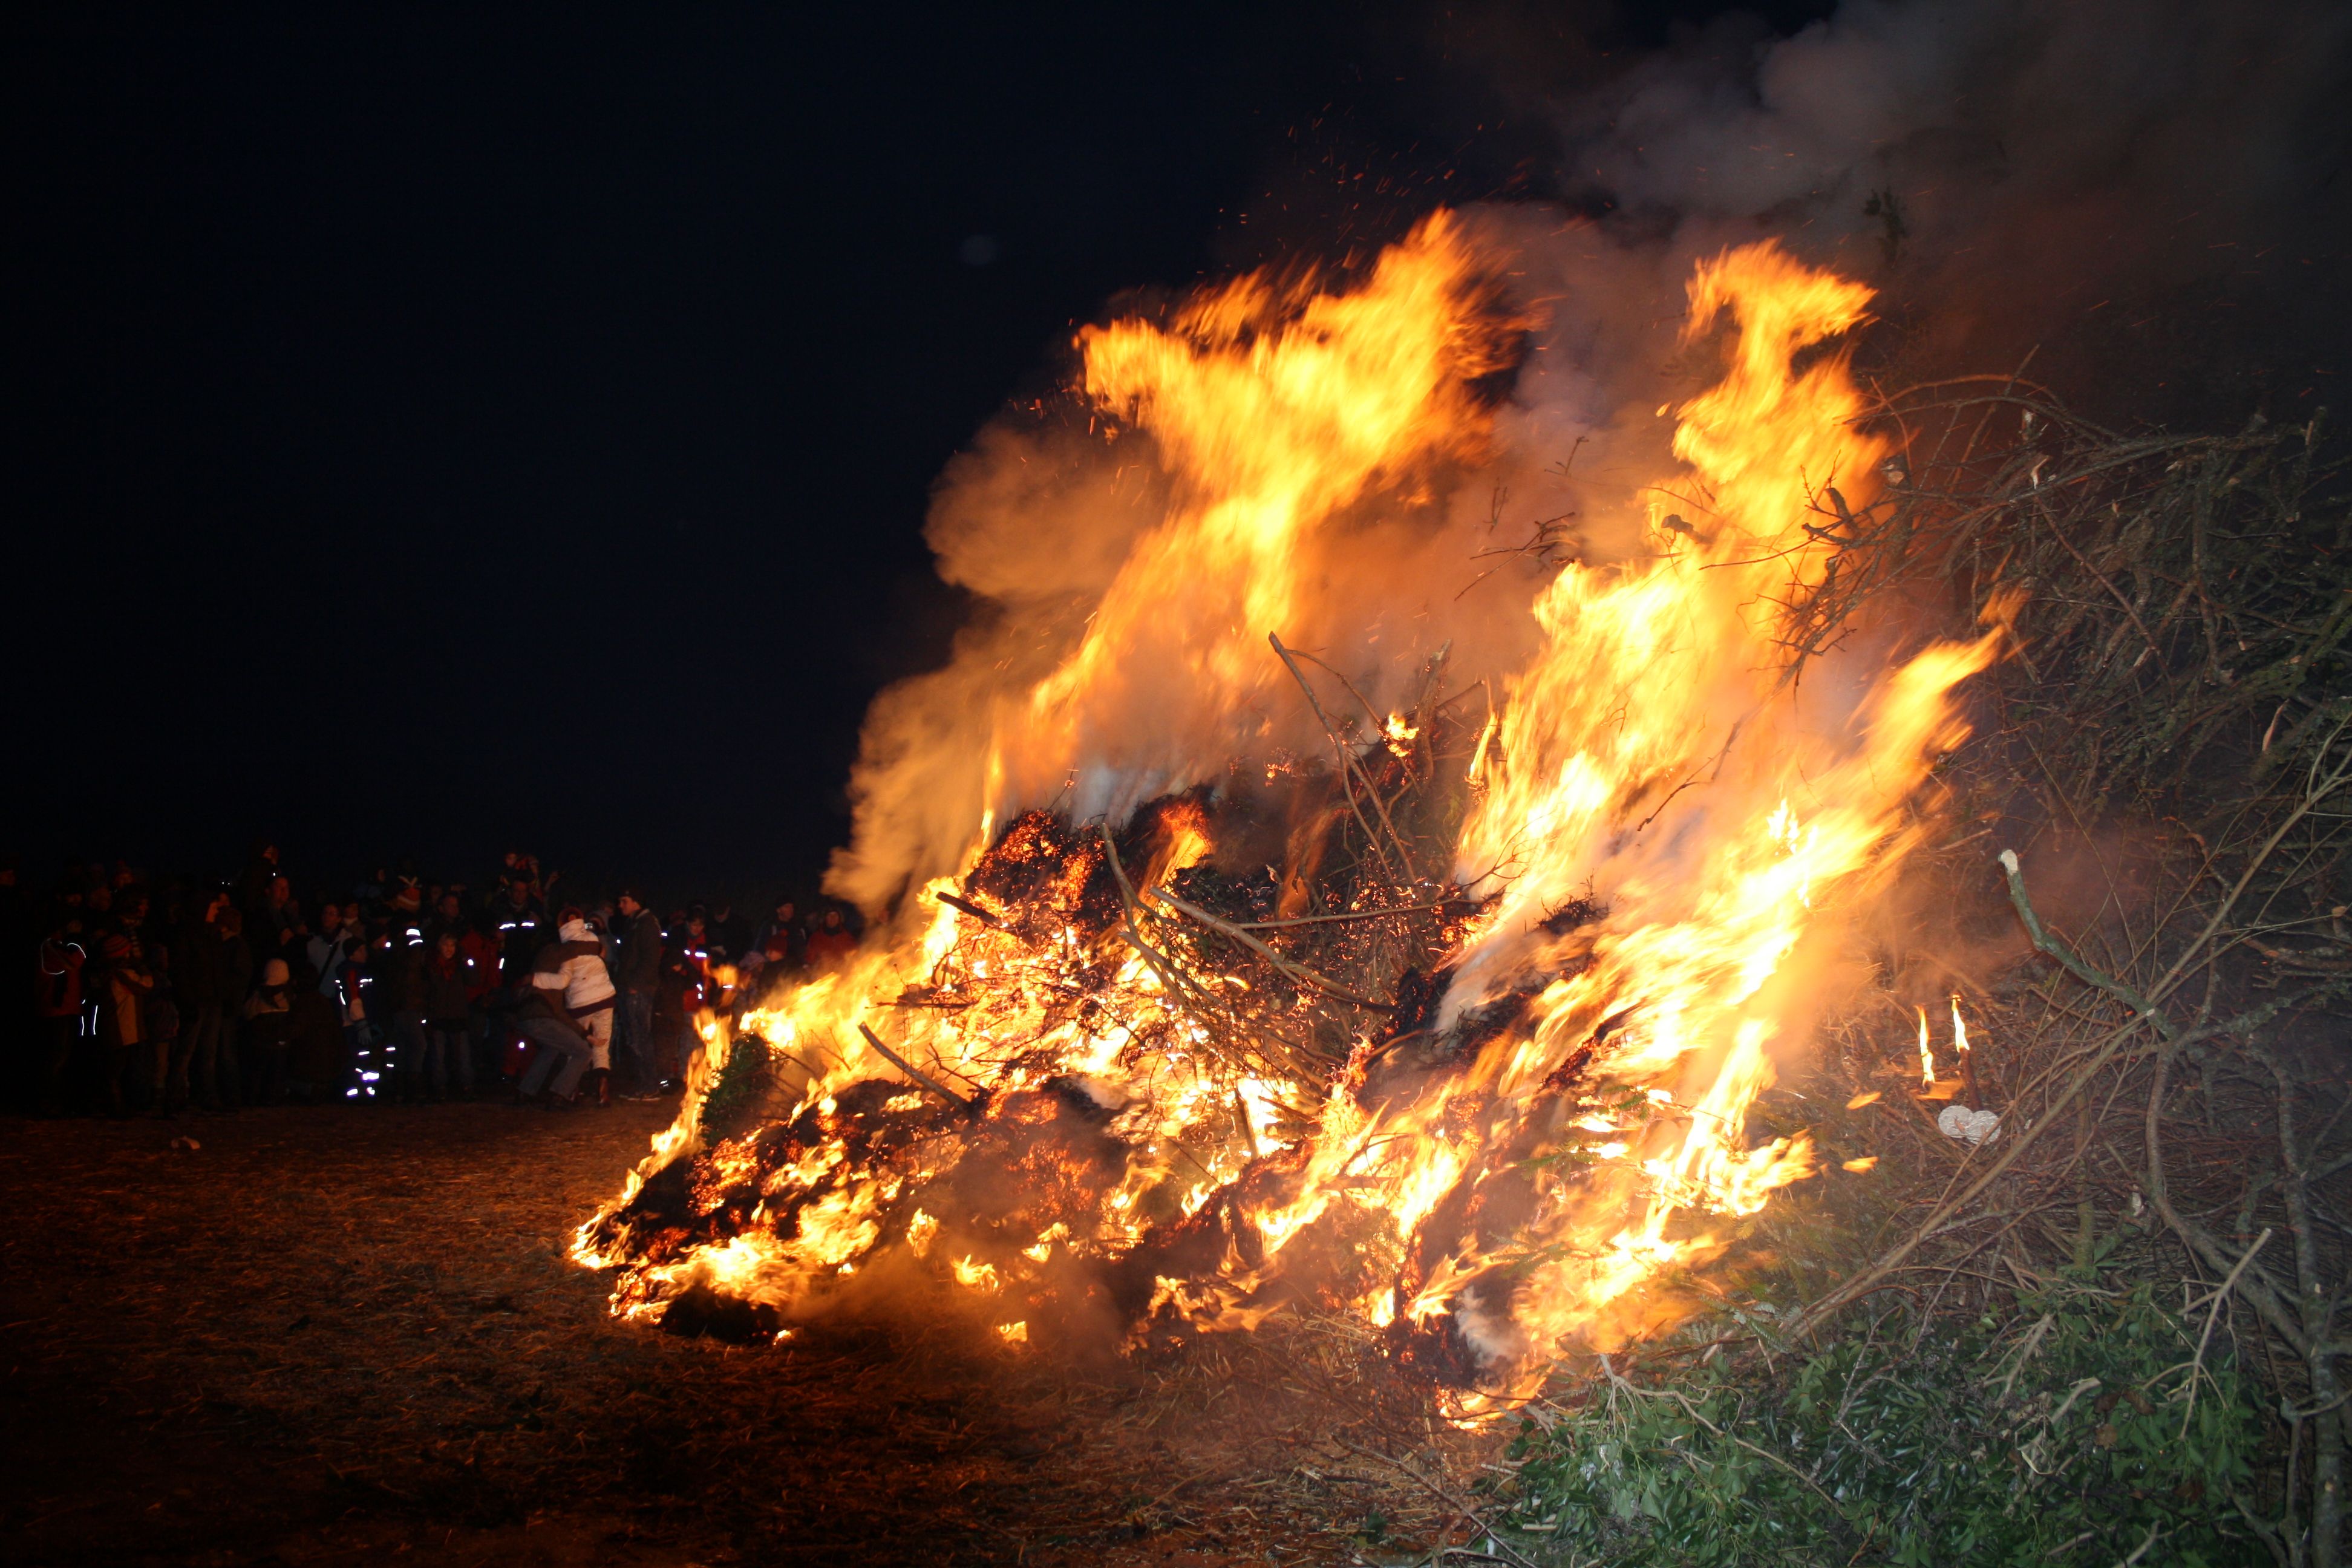 Biikebrennen ist ein traditionelles Feuerfest in Husum-Schobüll.